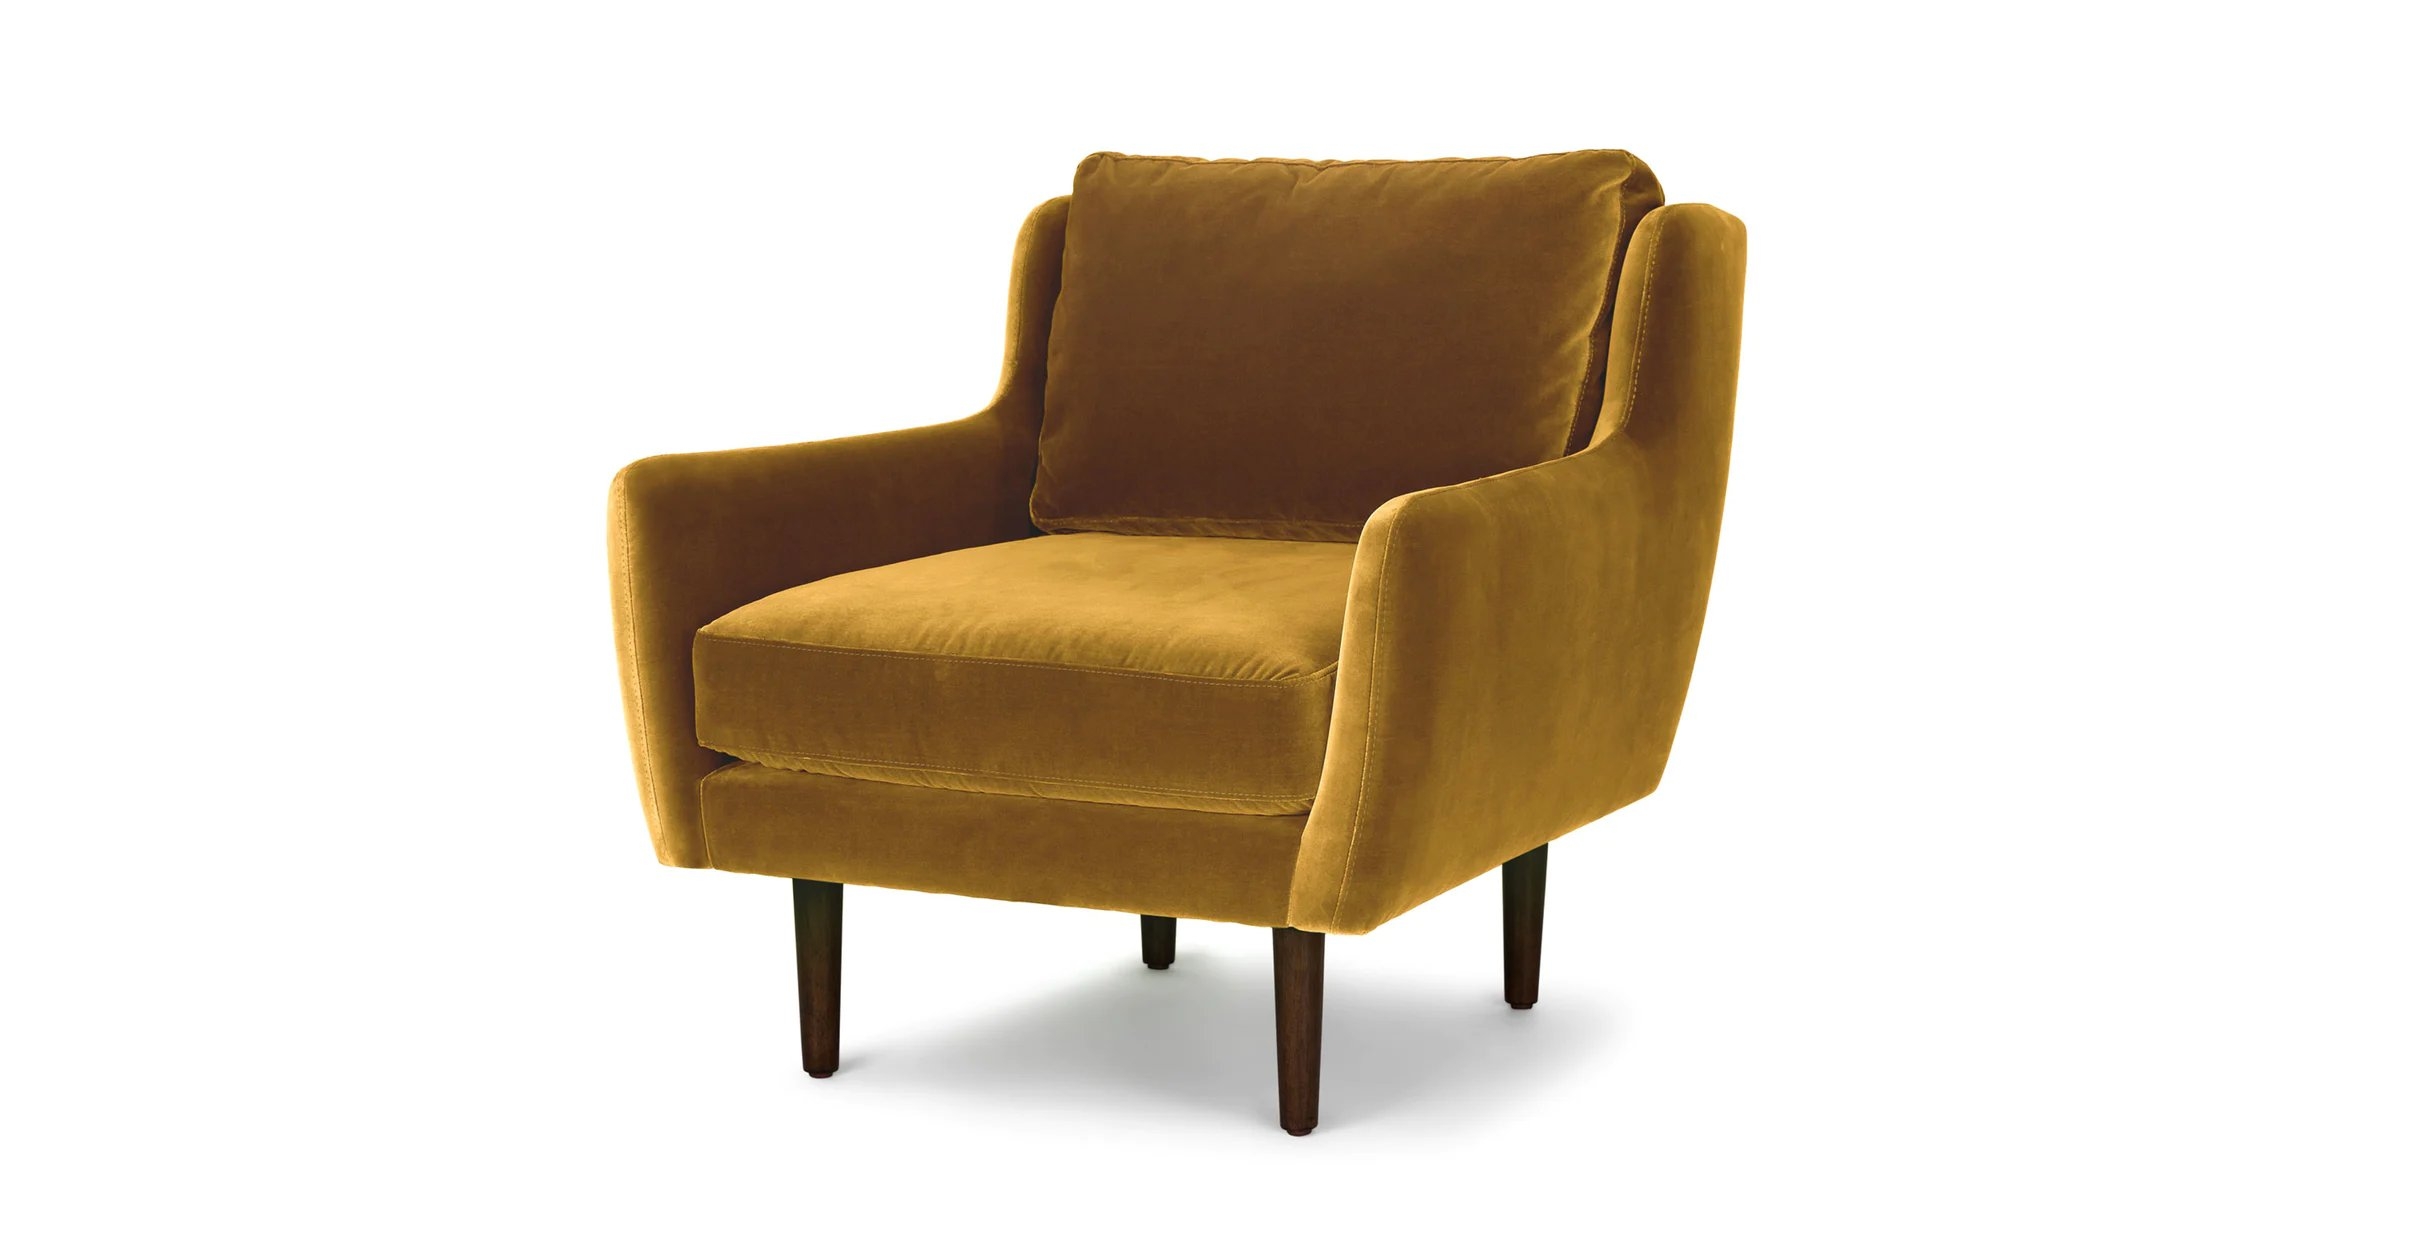 Matrix Lounge Chair - Yellow Gold and Walnut - Image 2